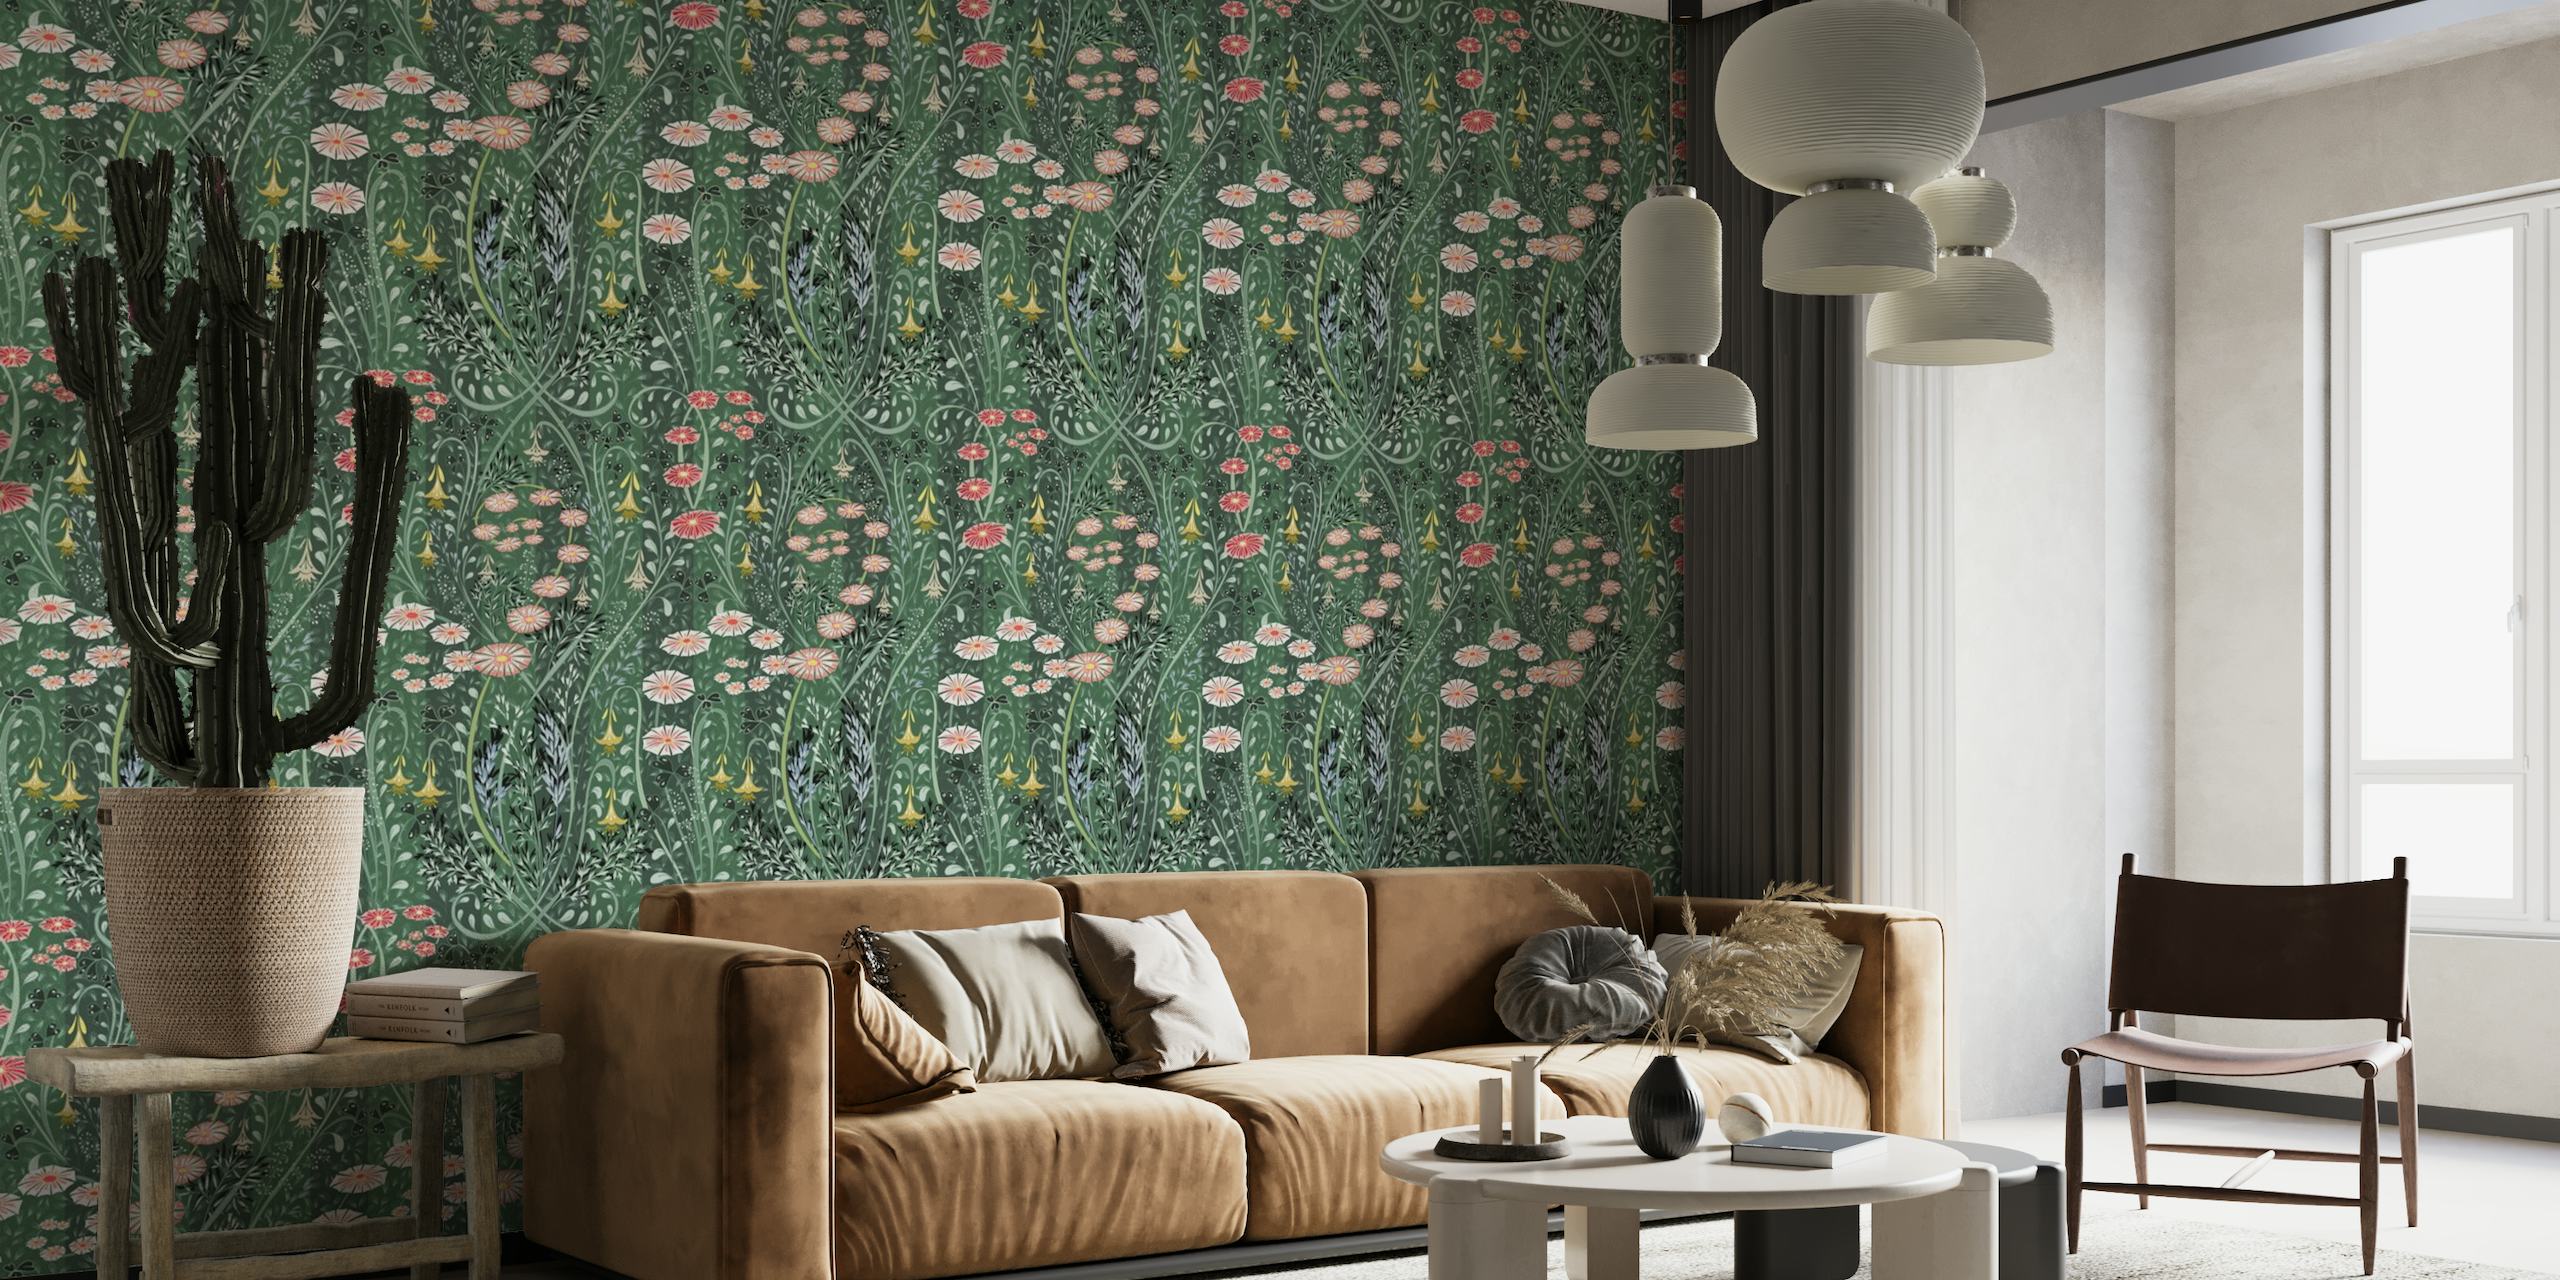 Zidna slika s cvjetnim uzorkom s bujnom zelenom pozadinom i šarenim livadskim cvijećem